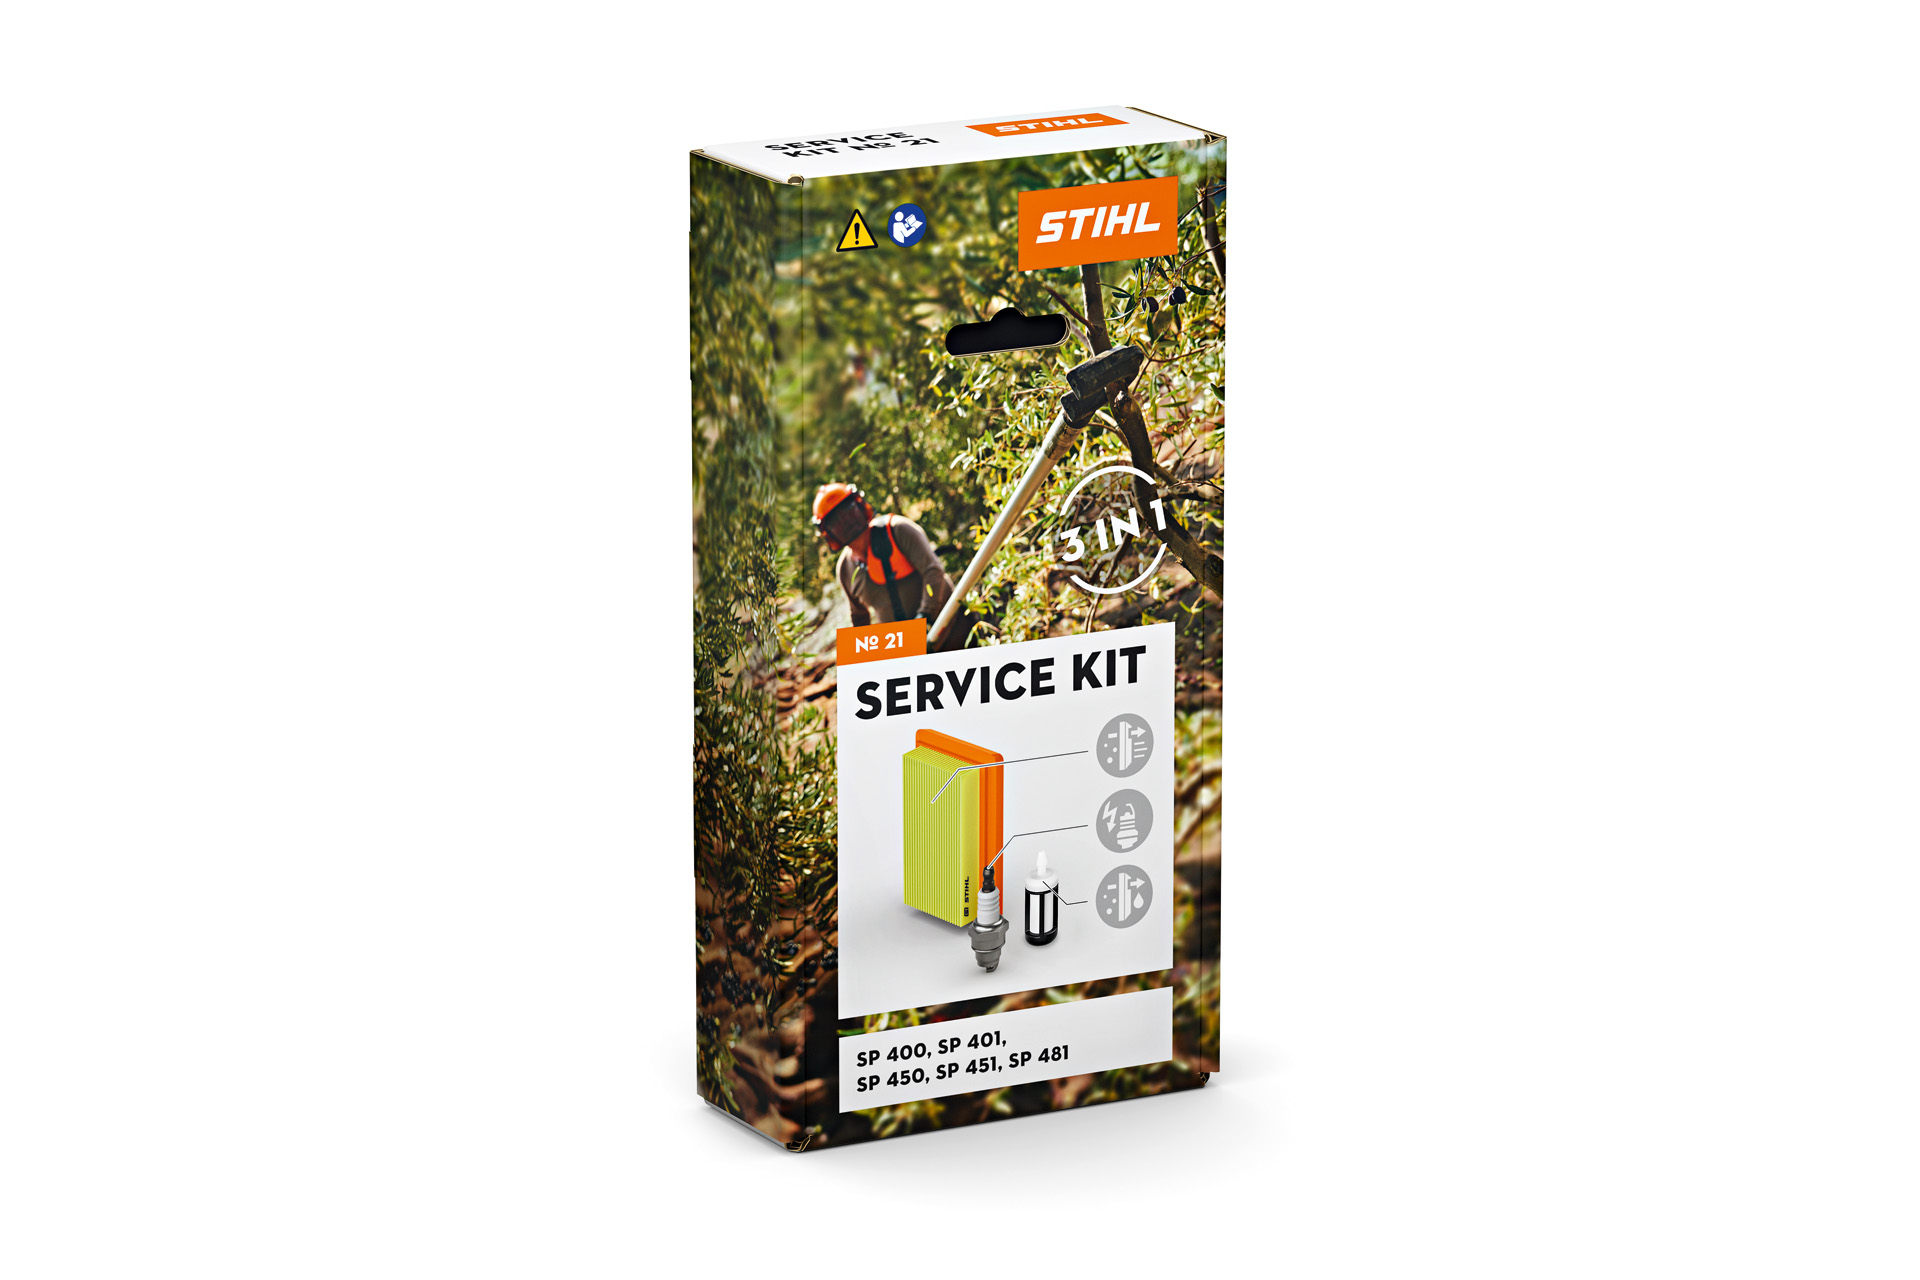 Service Kit 21